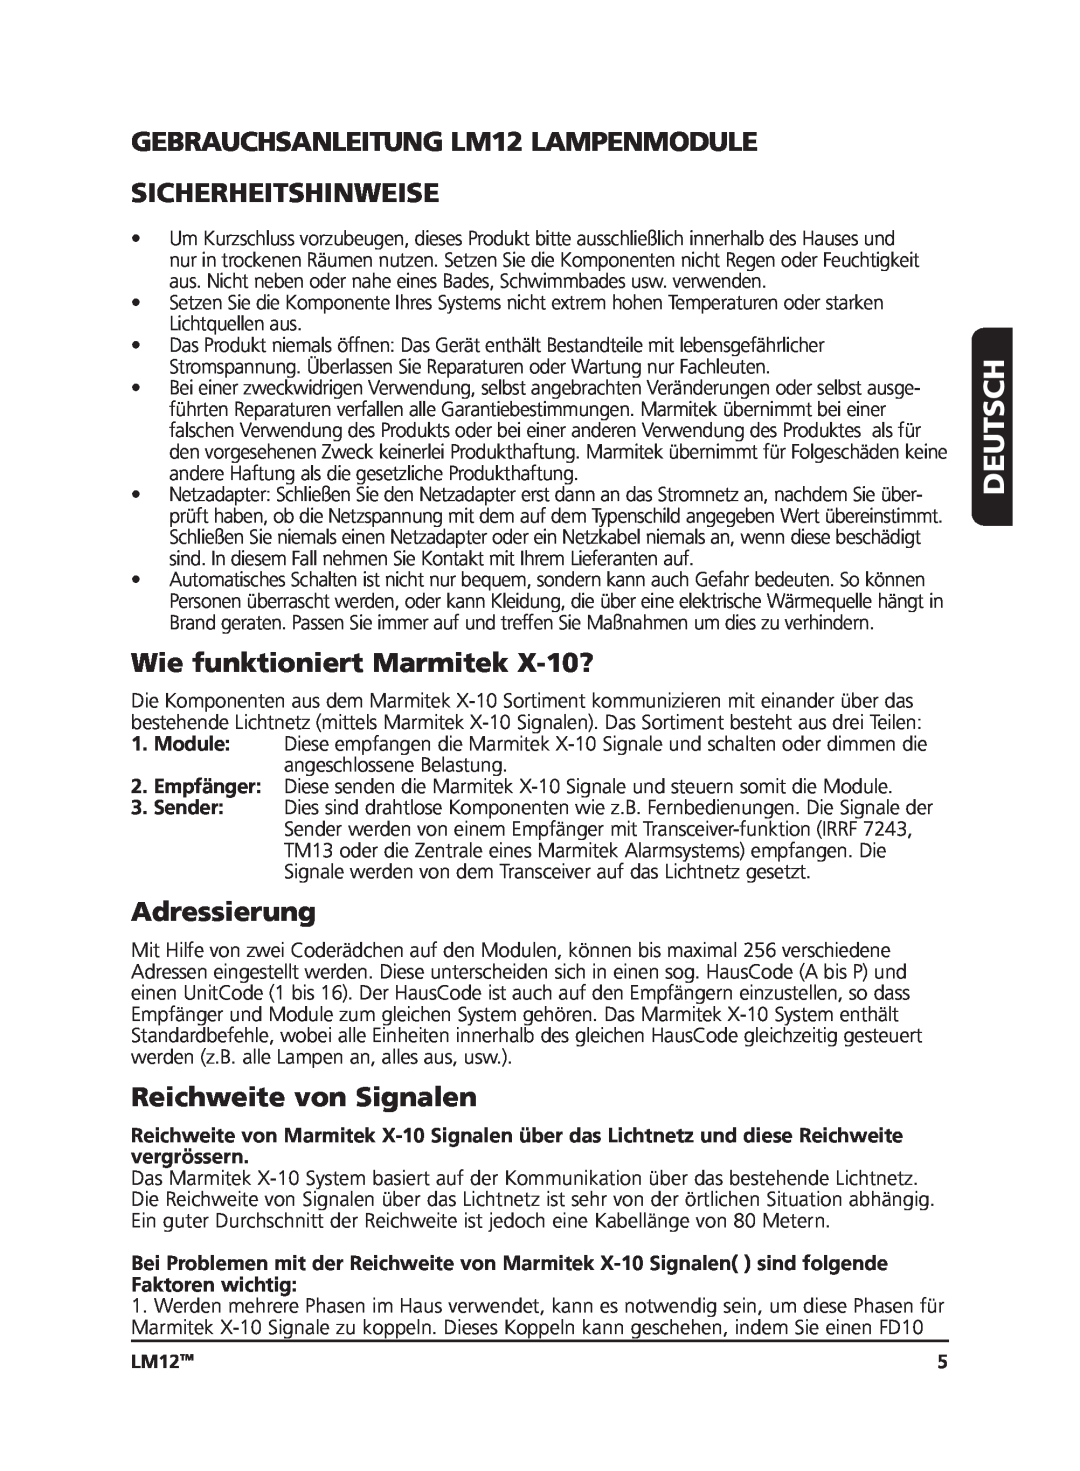 Marmitek user manual Deutsch, GEBRAUCHSANLEITUNG LM12 LAMPENMODULE, Sicherheitshinweise, Wie funktioniert Marmitek X-10? 